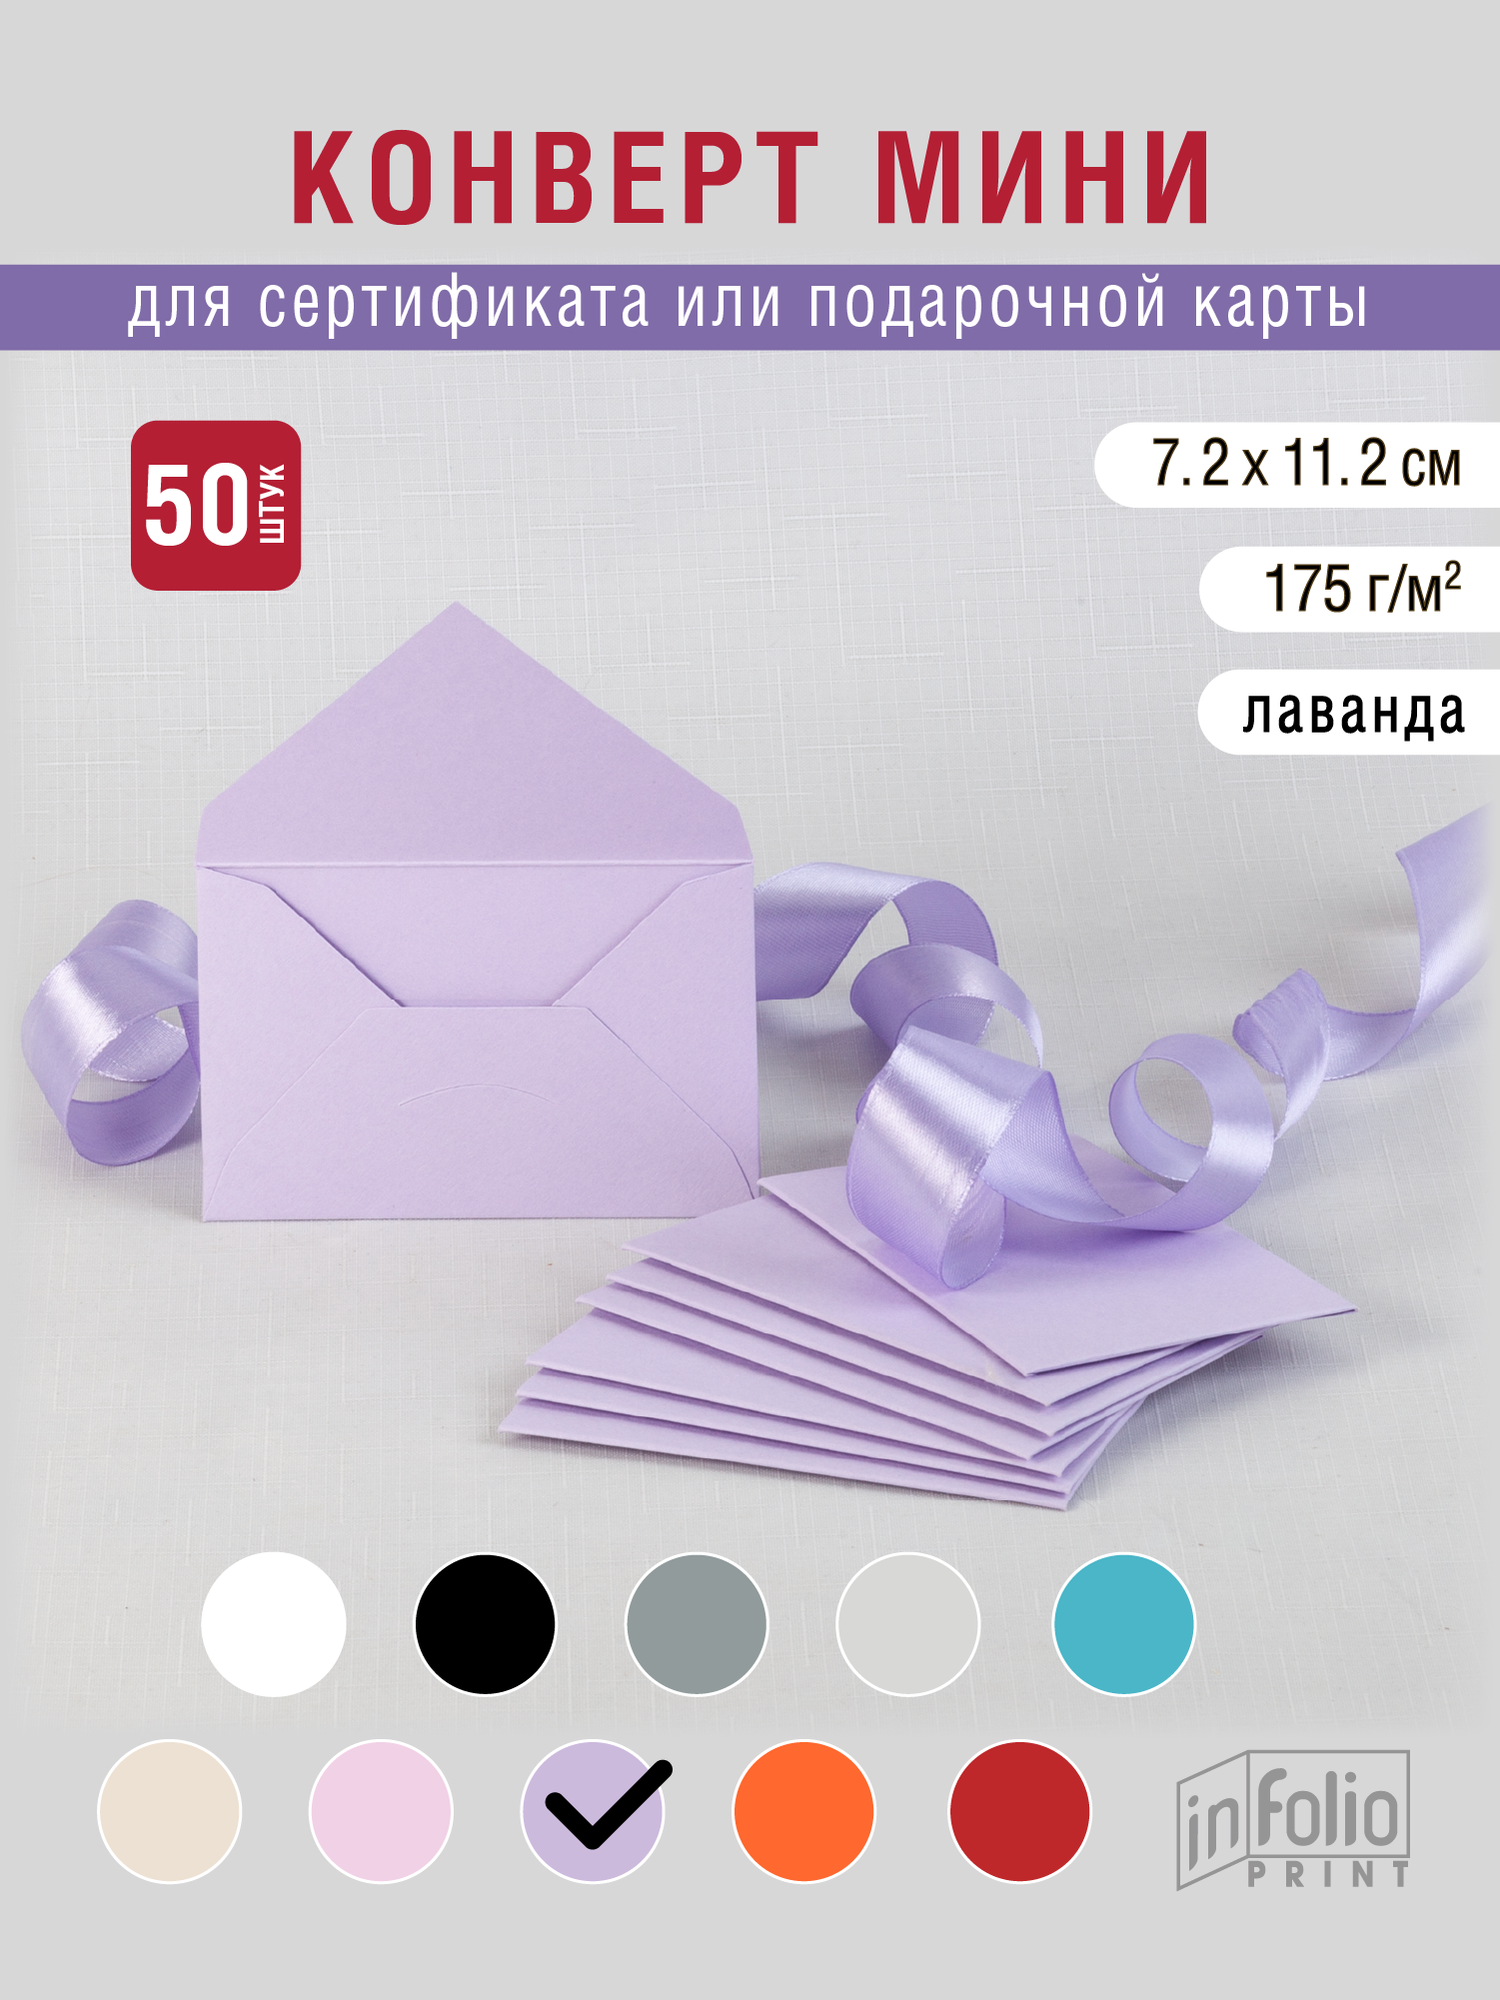 Самый популярный цвет - лаванда, конвертик мини7х11